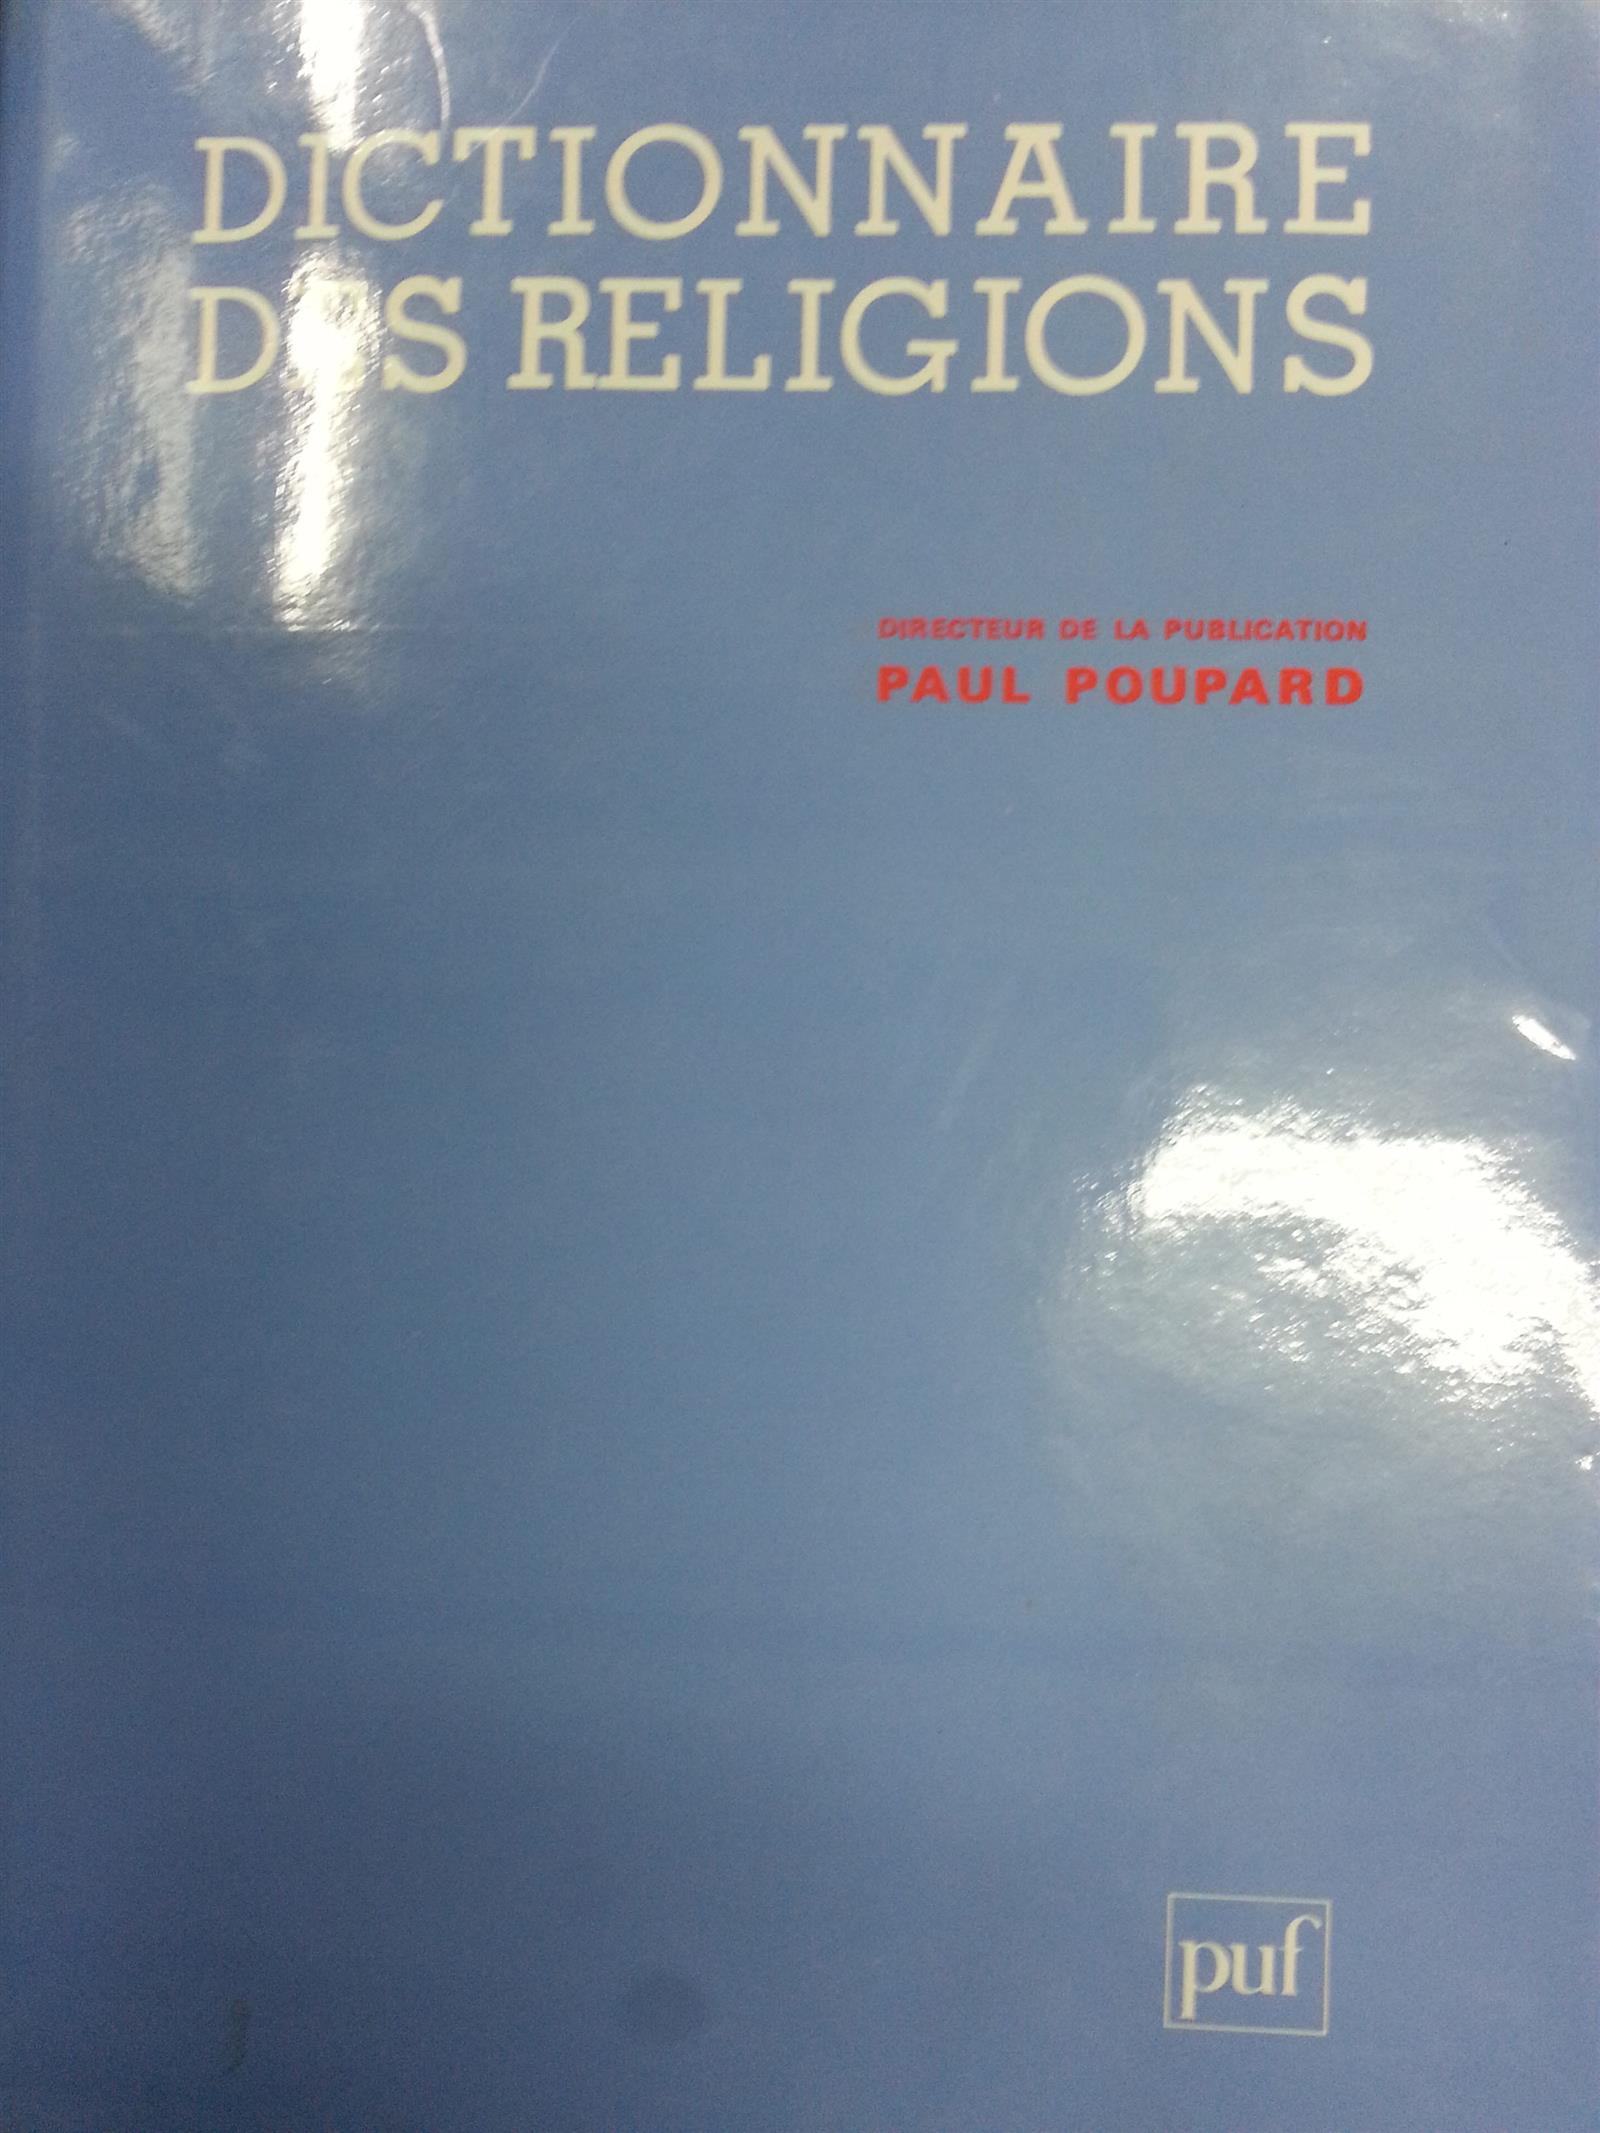 DICTIONNAIRE DES RELIGIONS